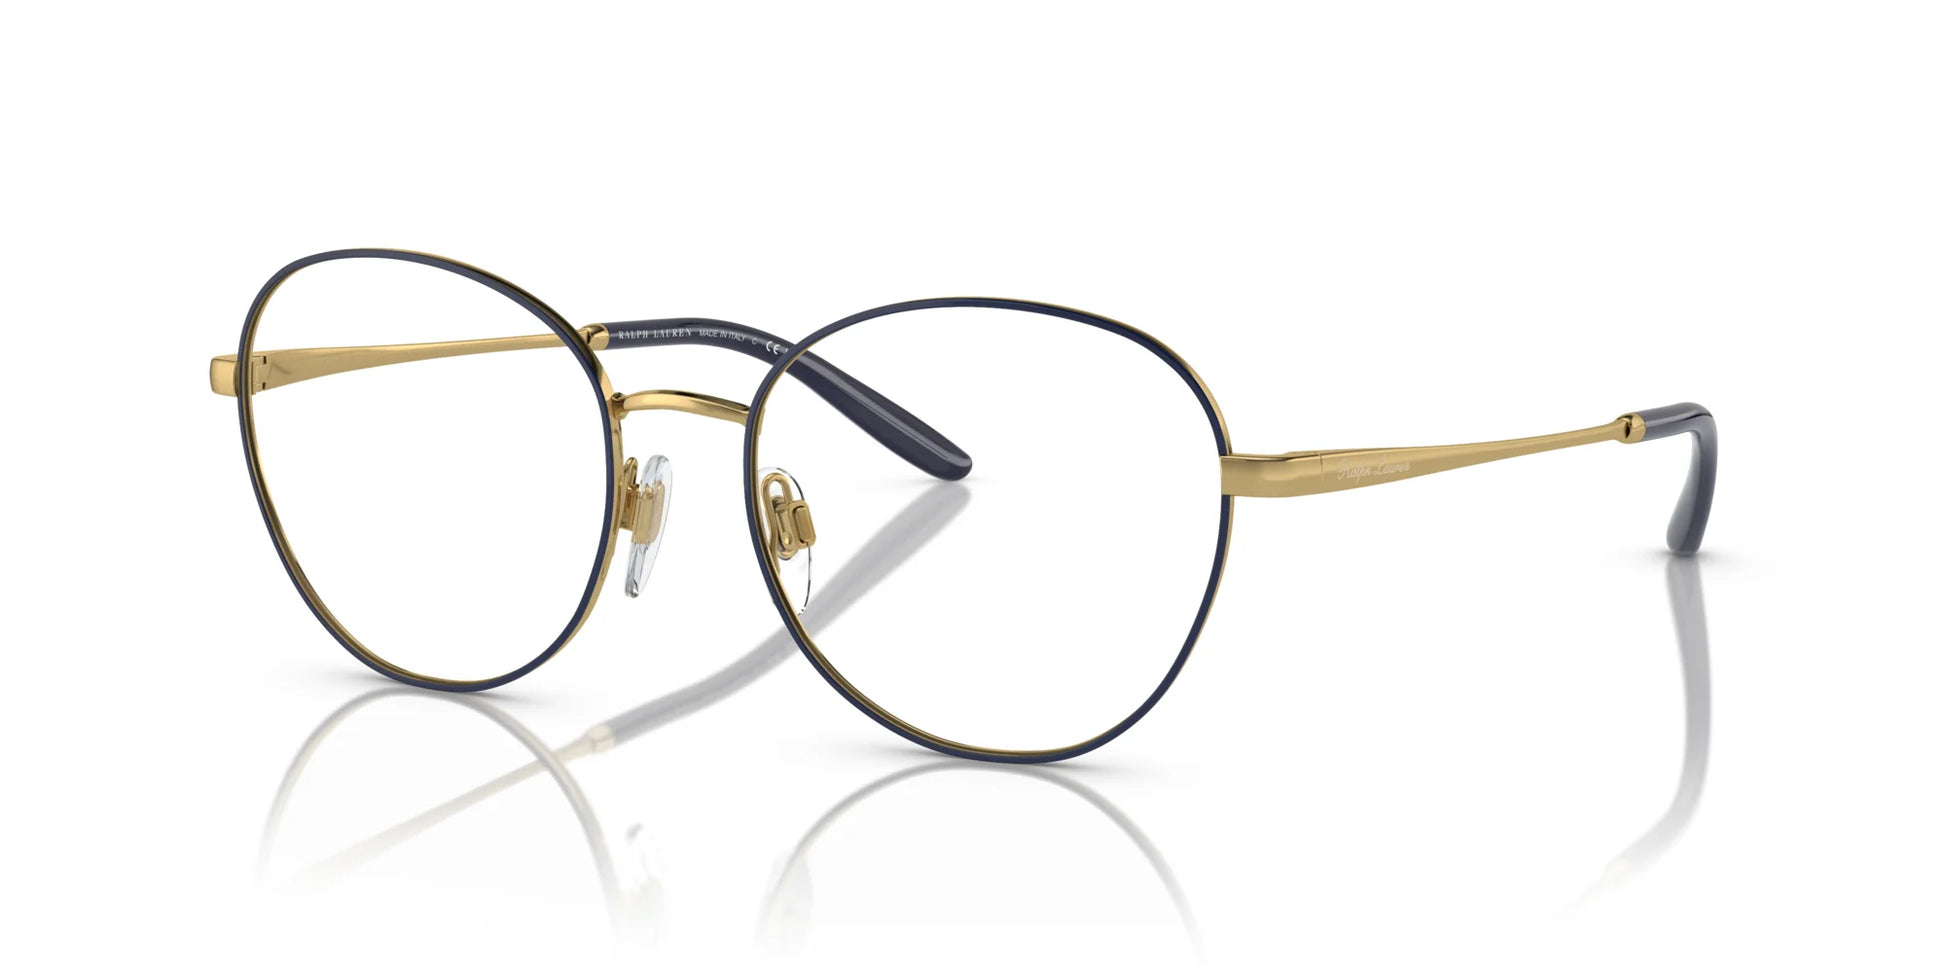 Ralph Lauren RL5121 Eyeglasses Blue / Gold